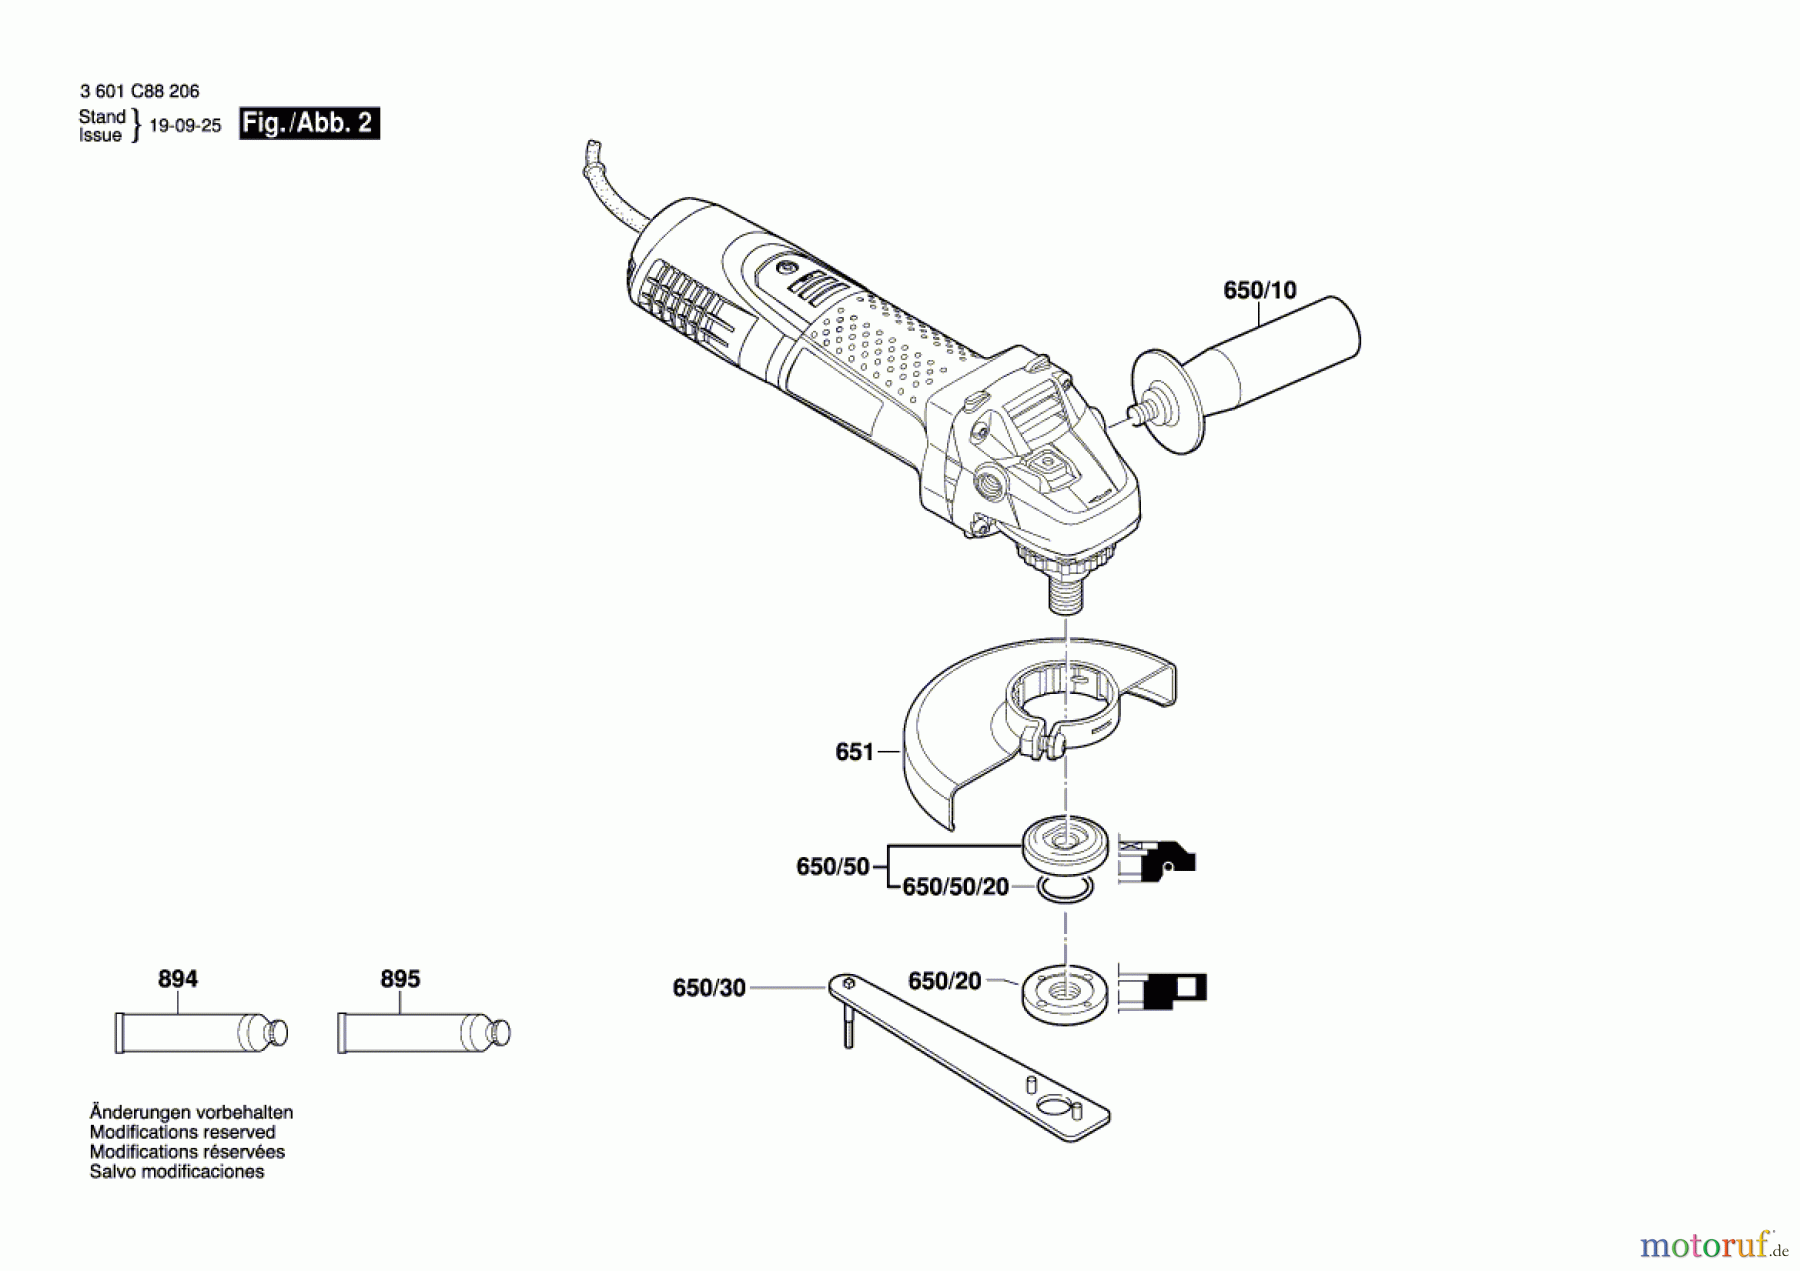  Bosch Werkzeug Winkelschleifer GWS 7-125 S Seite 2